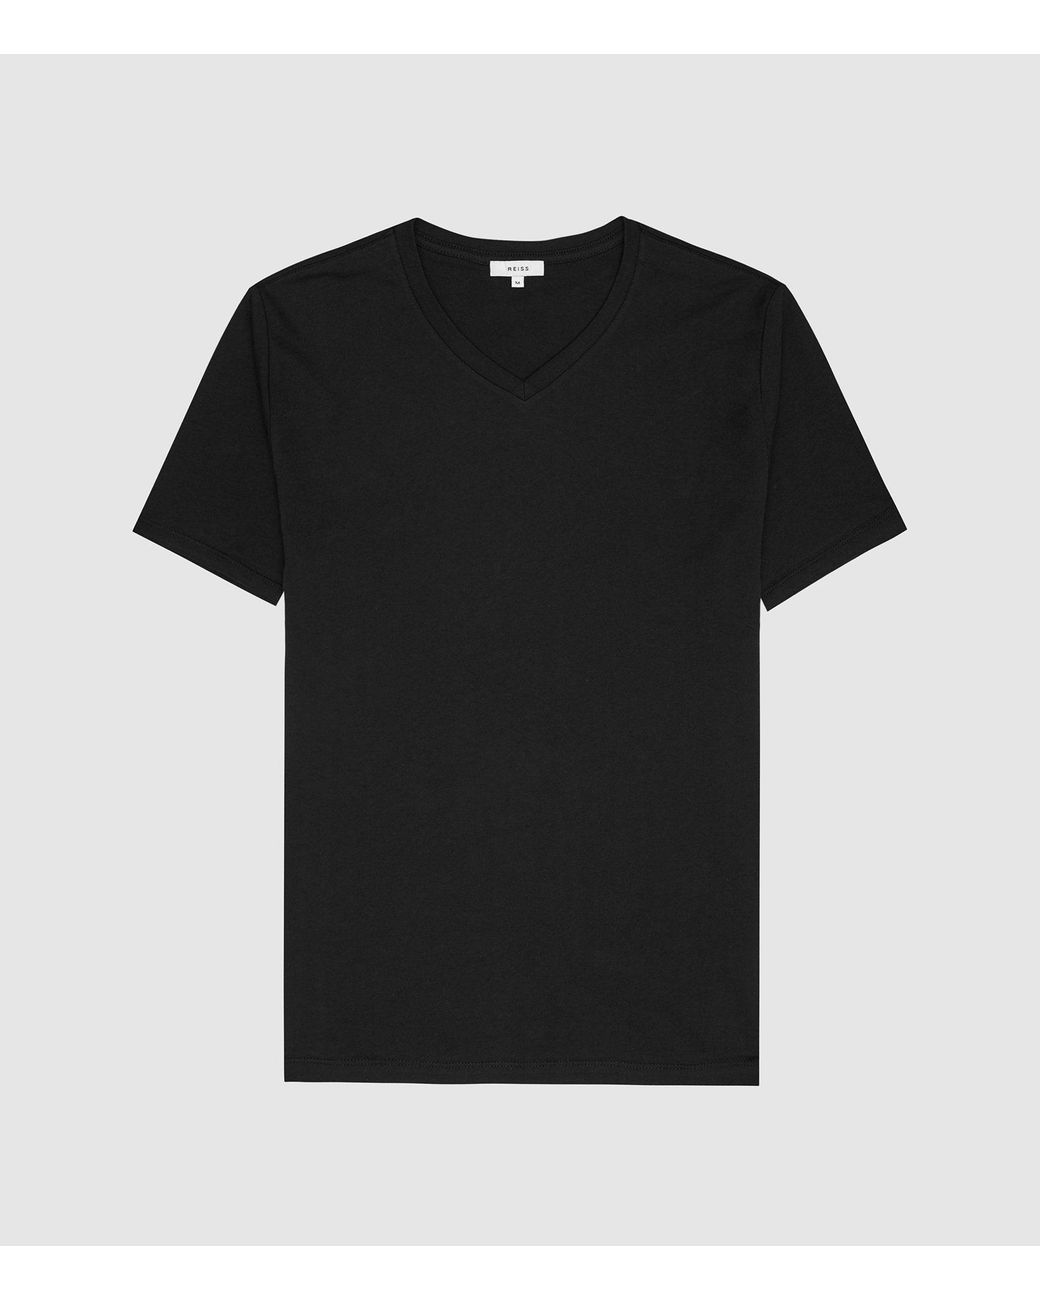 Reiss V-neck T-shirt in Black for Men - Lyst